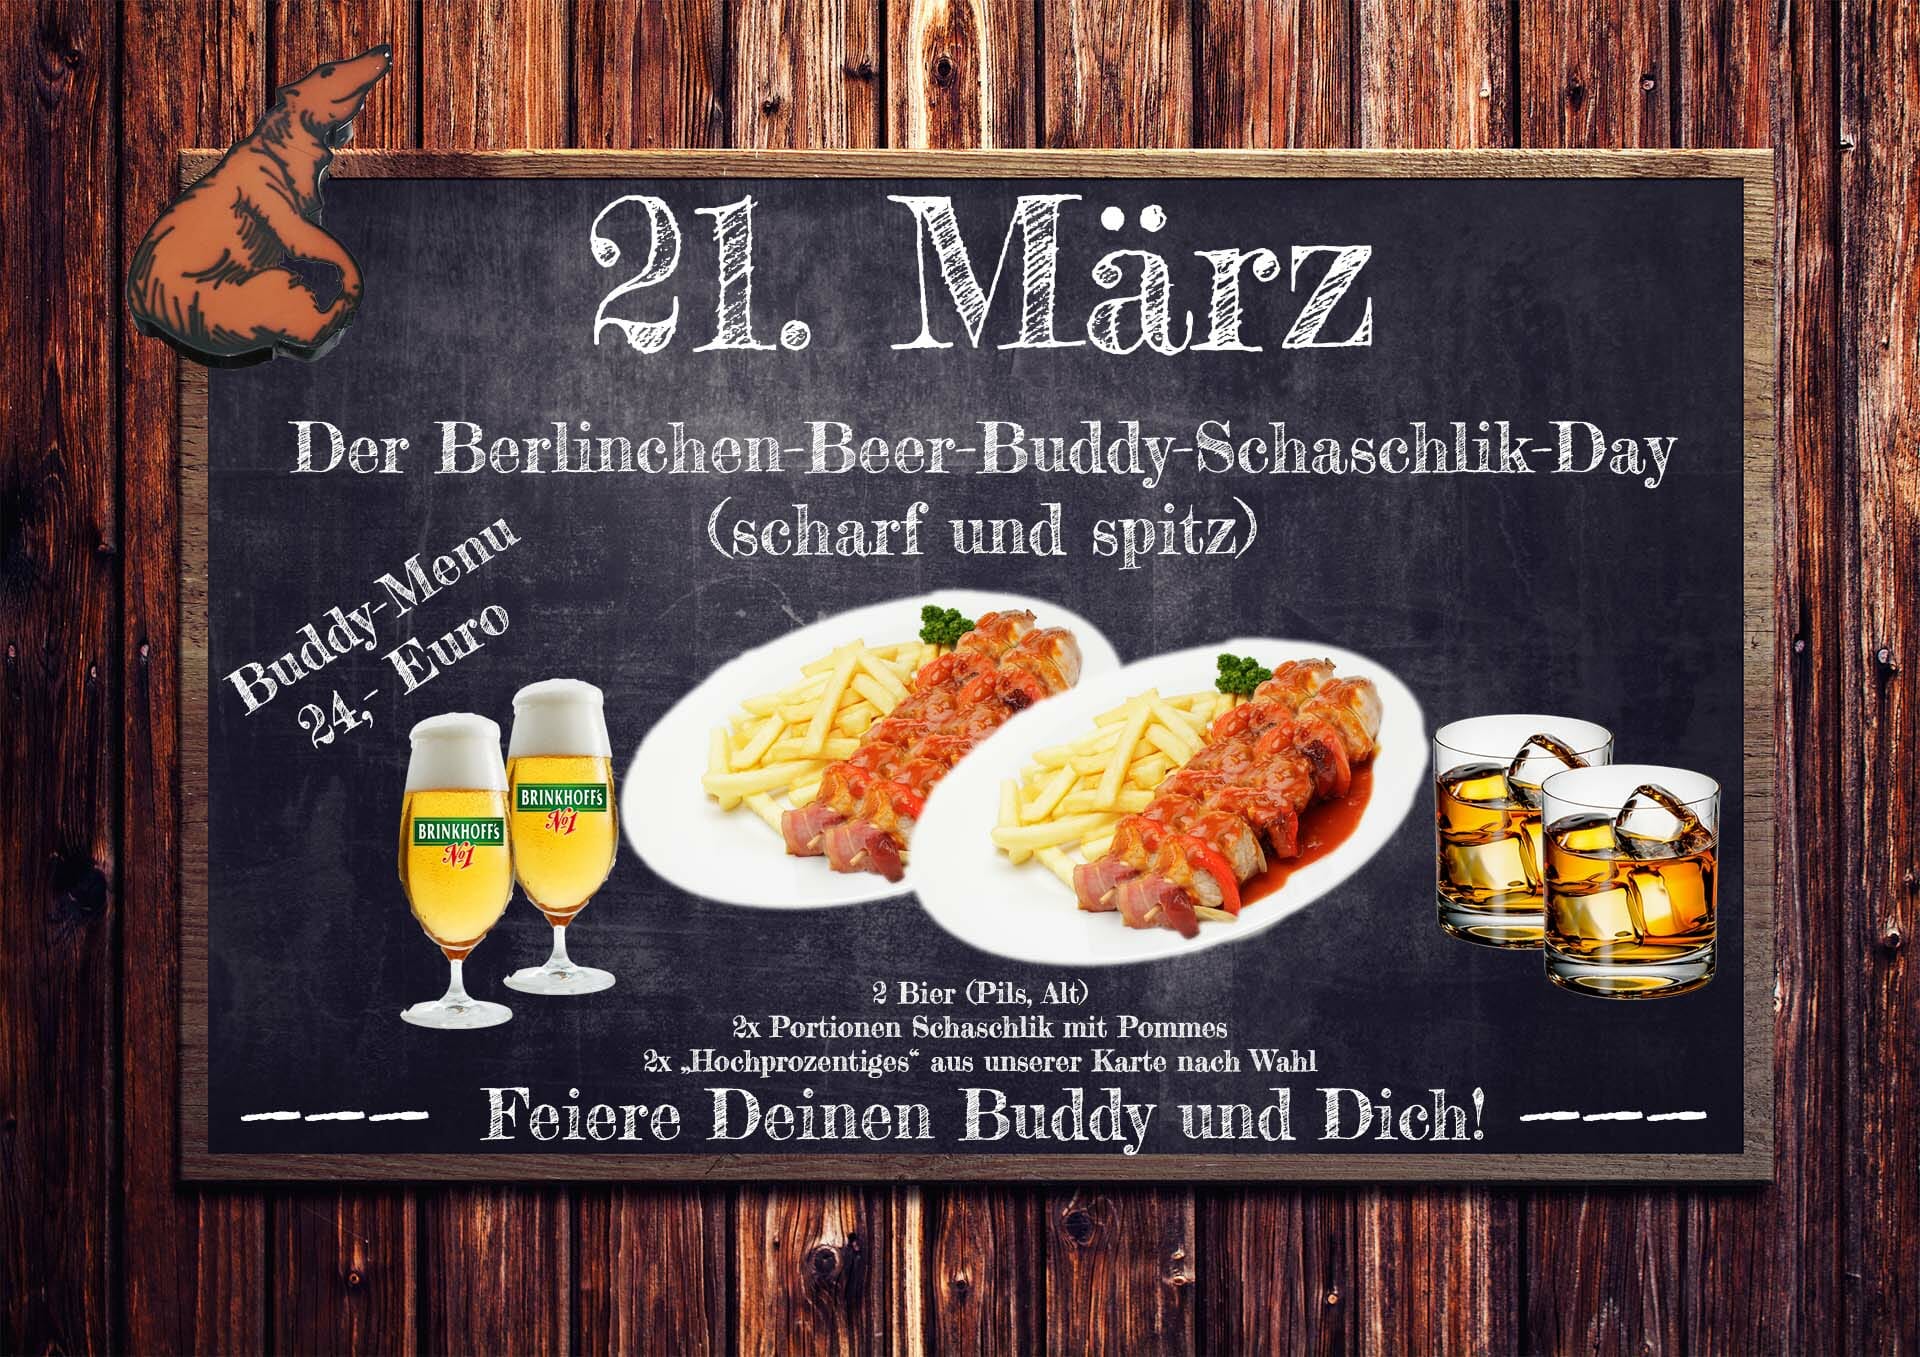 Berlinchen-Beer-Buddy-Schaschlik-Day